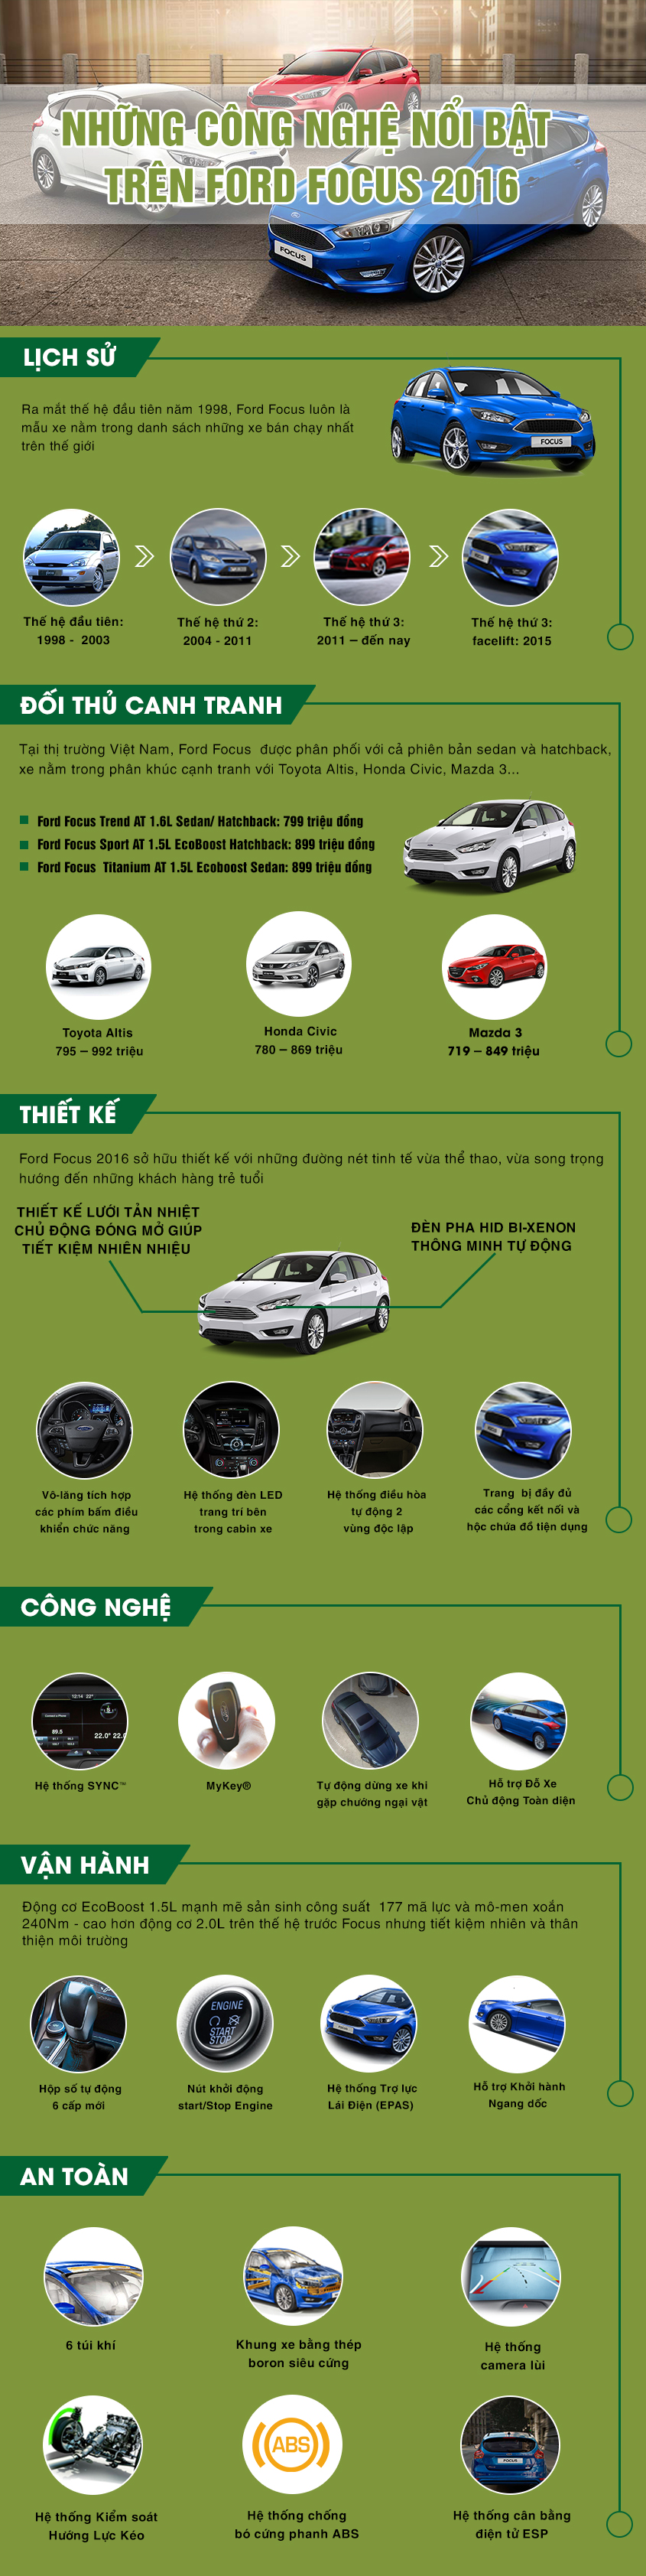 Ford Focus 2016 với nhiều tính năng an toàn, công nghệ mới